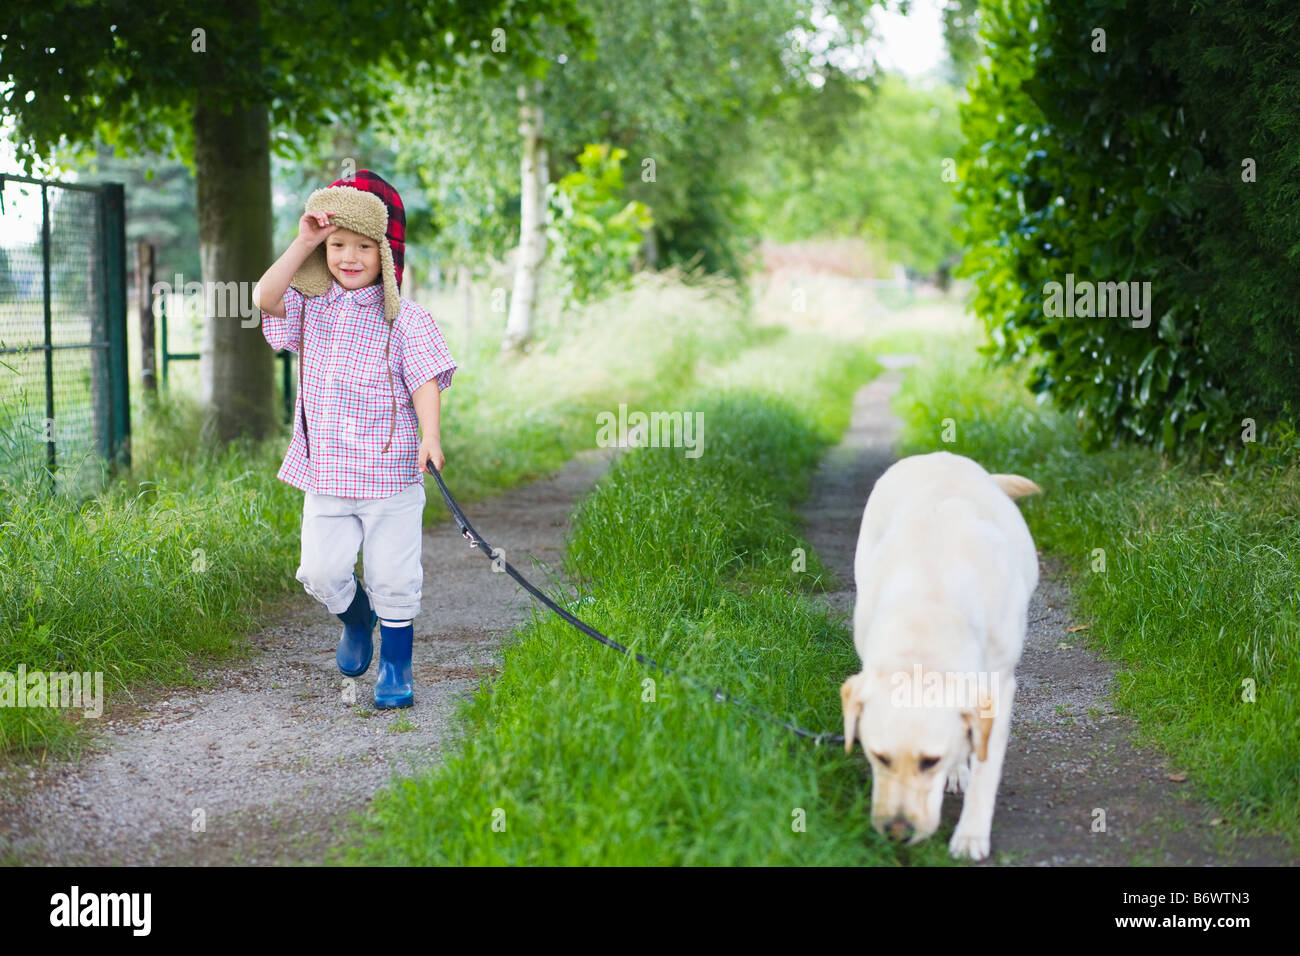 Un garçon promenait son chien Banque D'Images